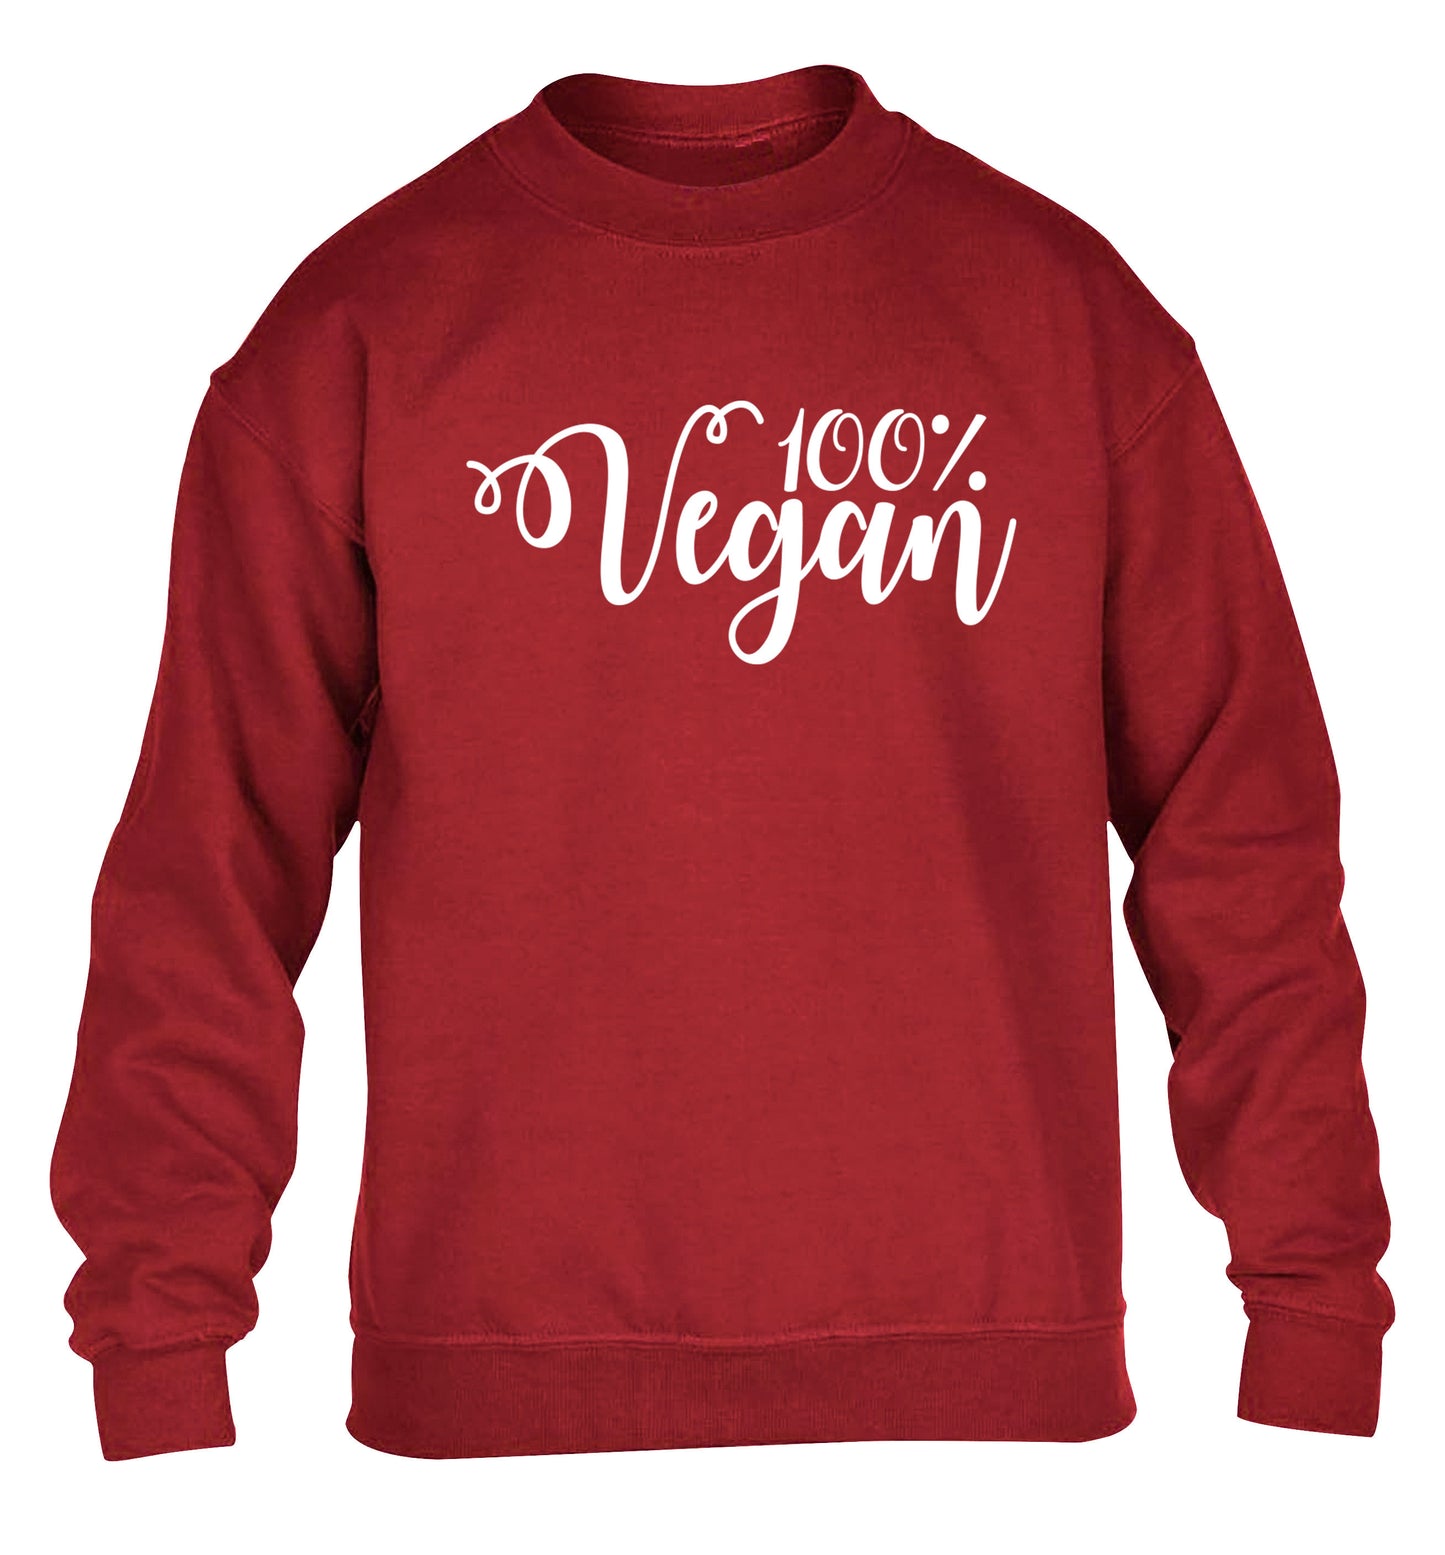 100% Vegan children's grey sweater 12-14 Years